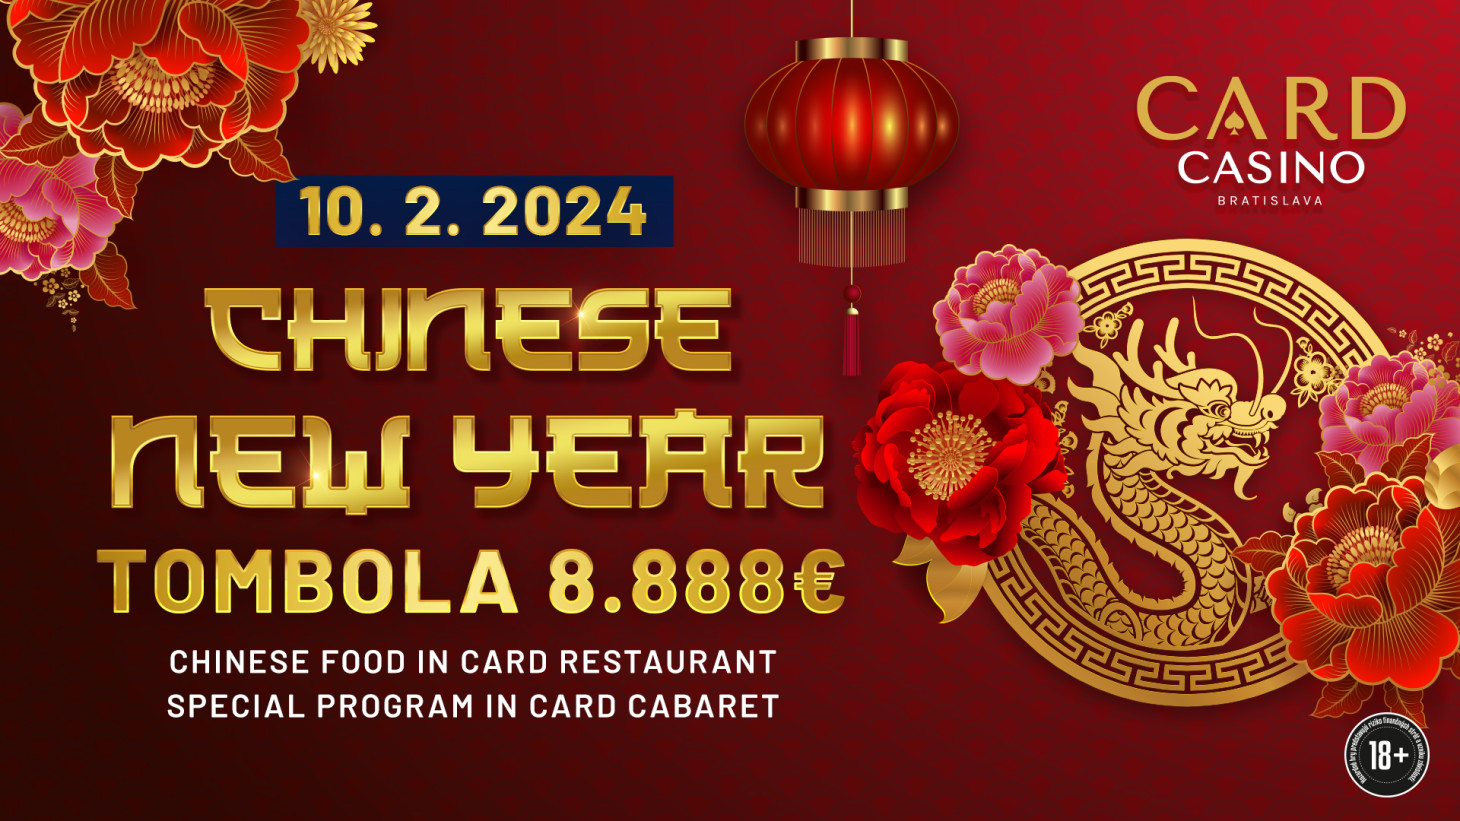 Príďte osláviť Čínsky Nový rok Draka s parádnou tombolou o 8.888€